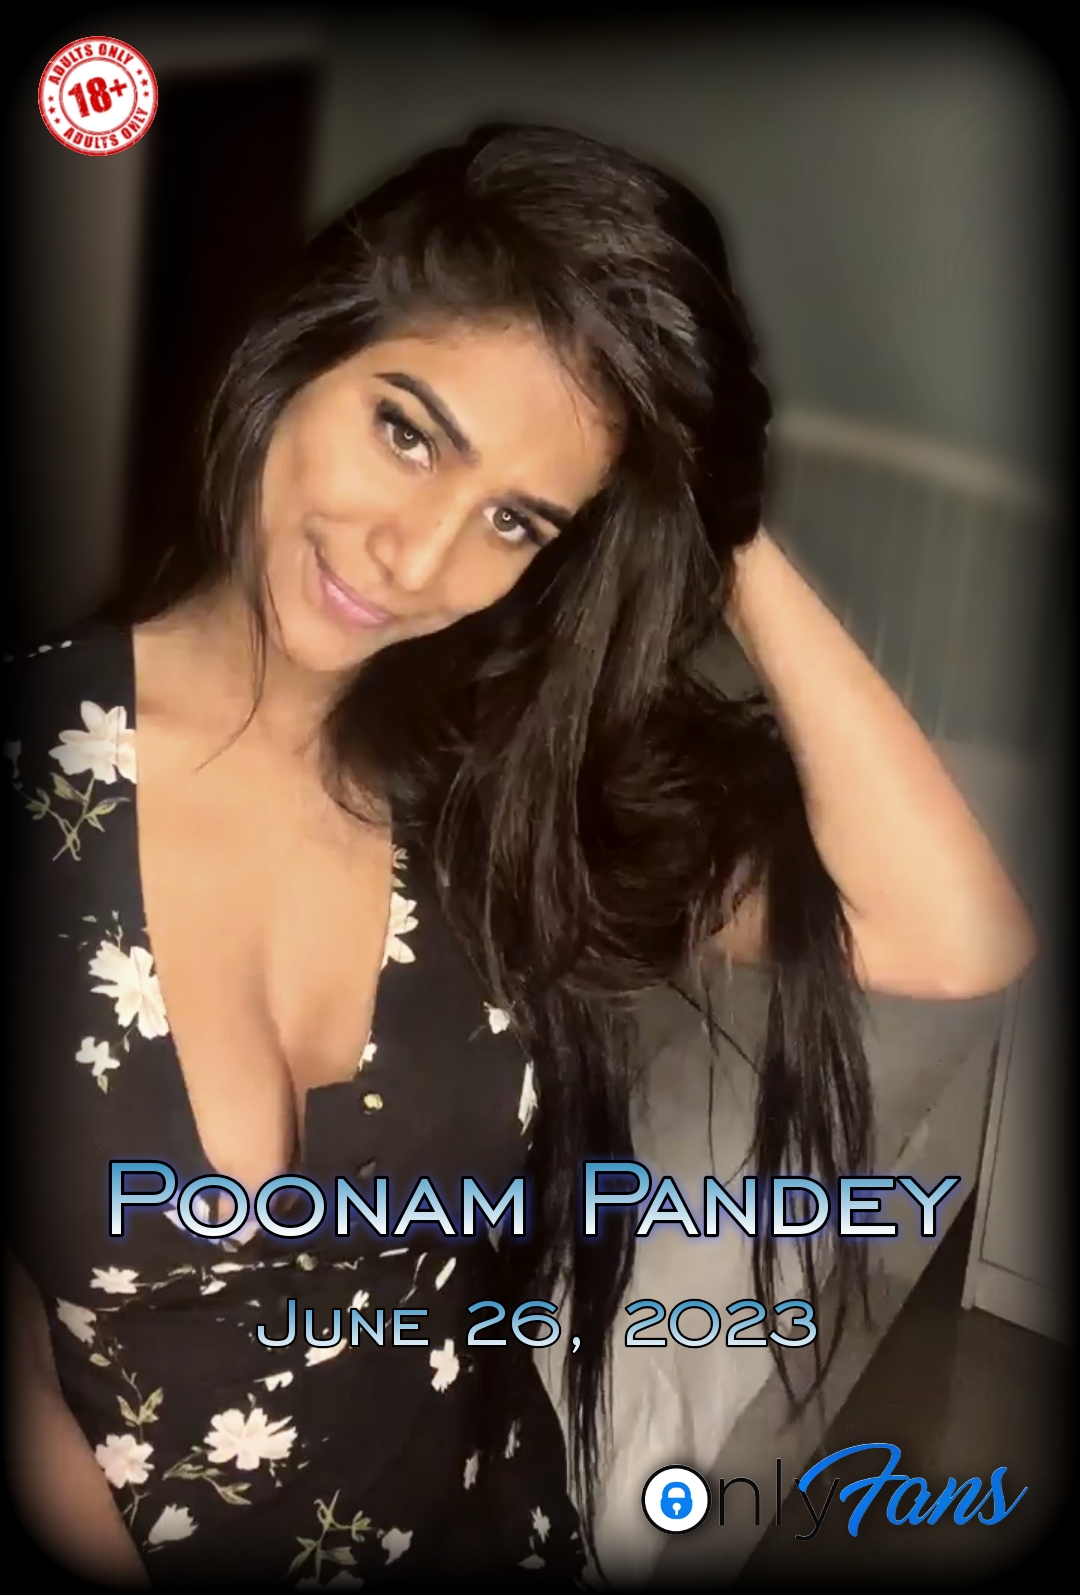 Poonam Pandey 26 June Live Onlyfans